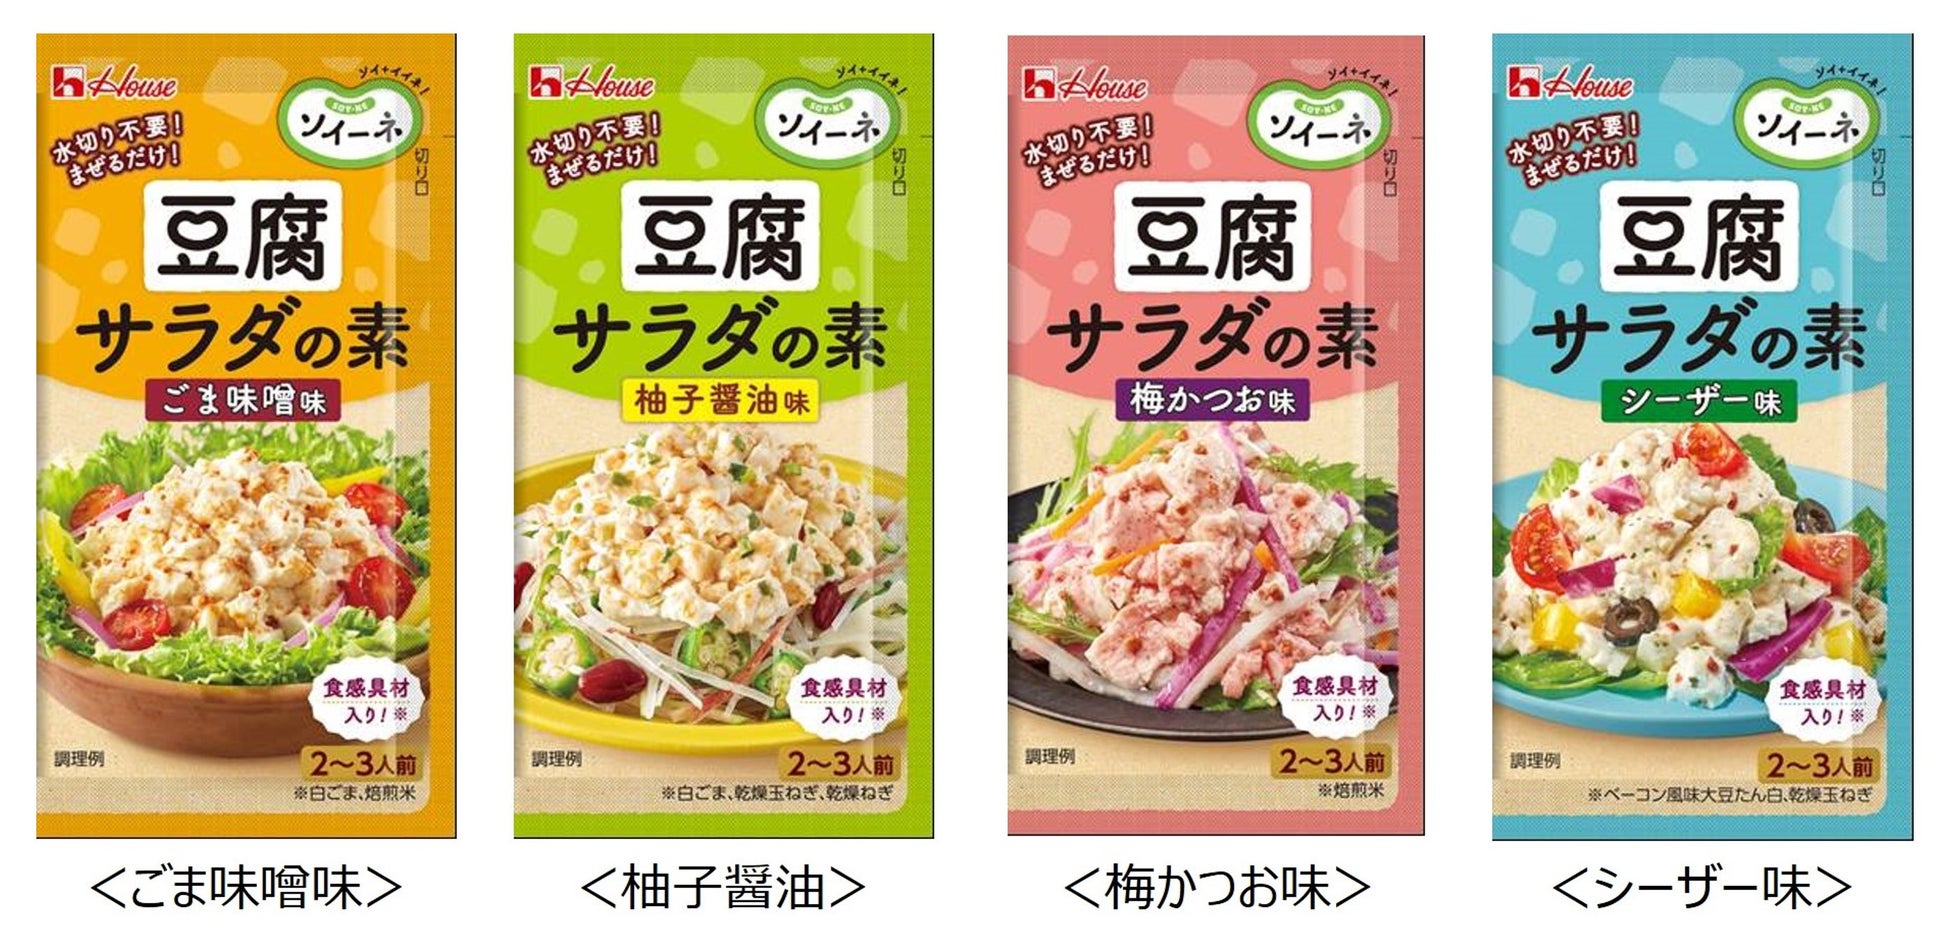 日本に新しい豆腐メニューを！「ソイーネ」ブランド第2弾製品「ソイーネ　豆腐サラダの素」 2月12日に新発売